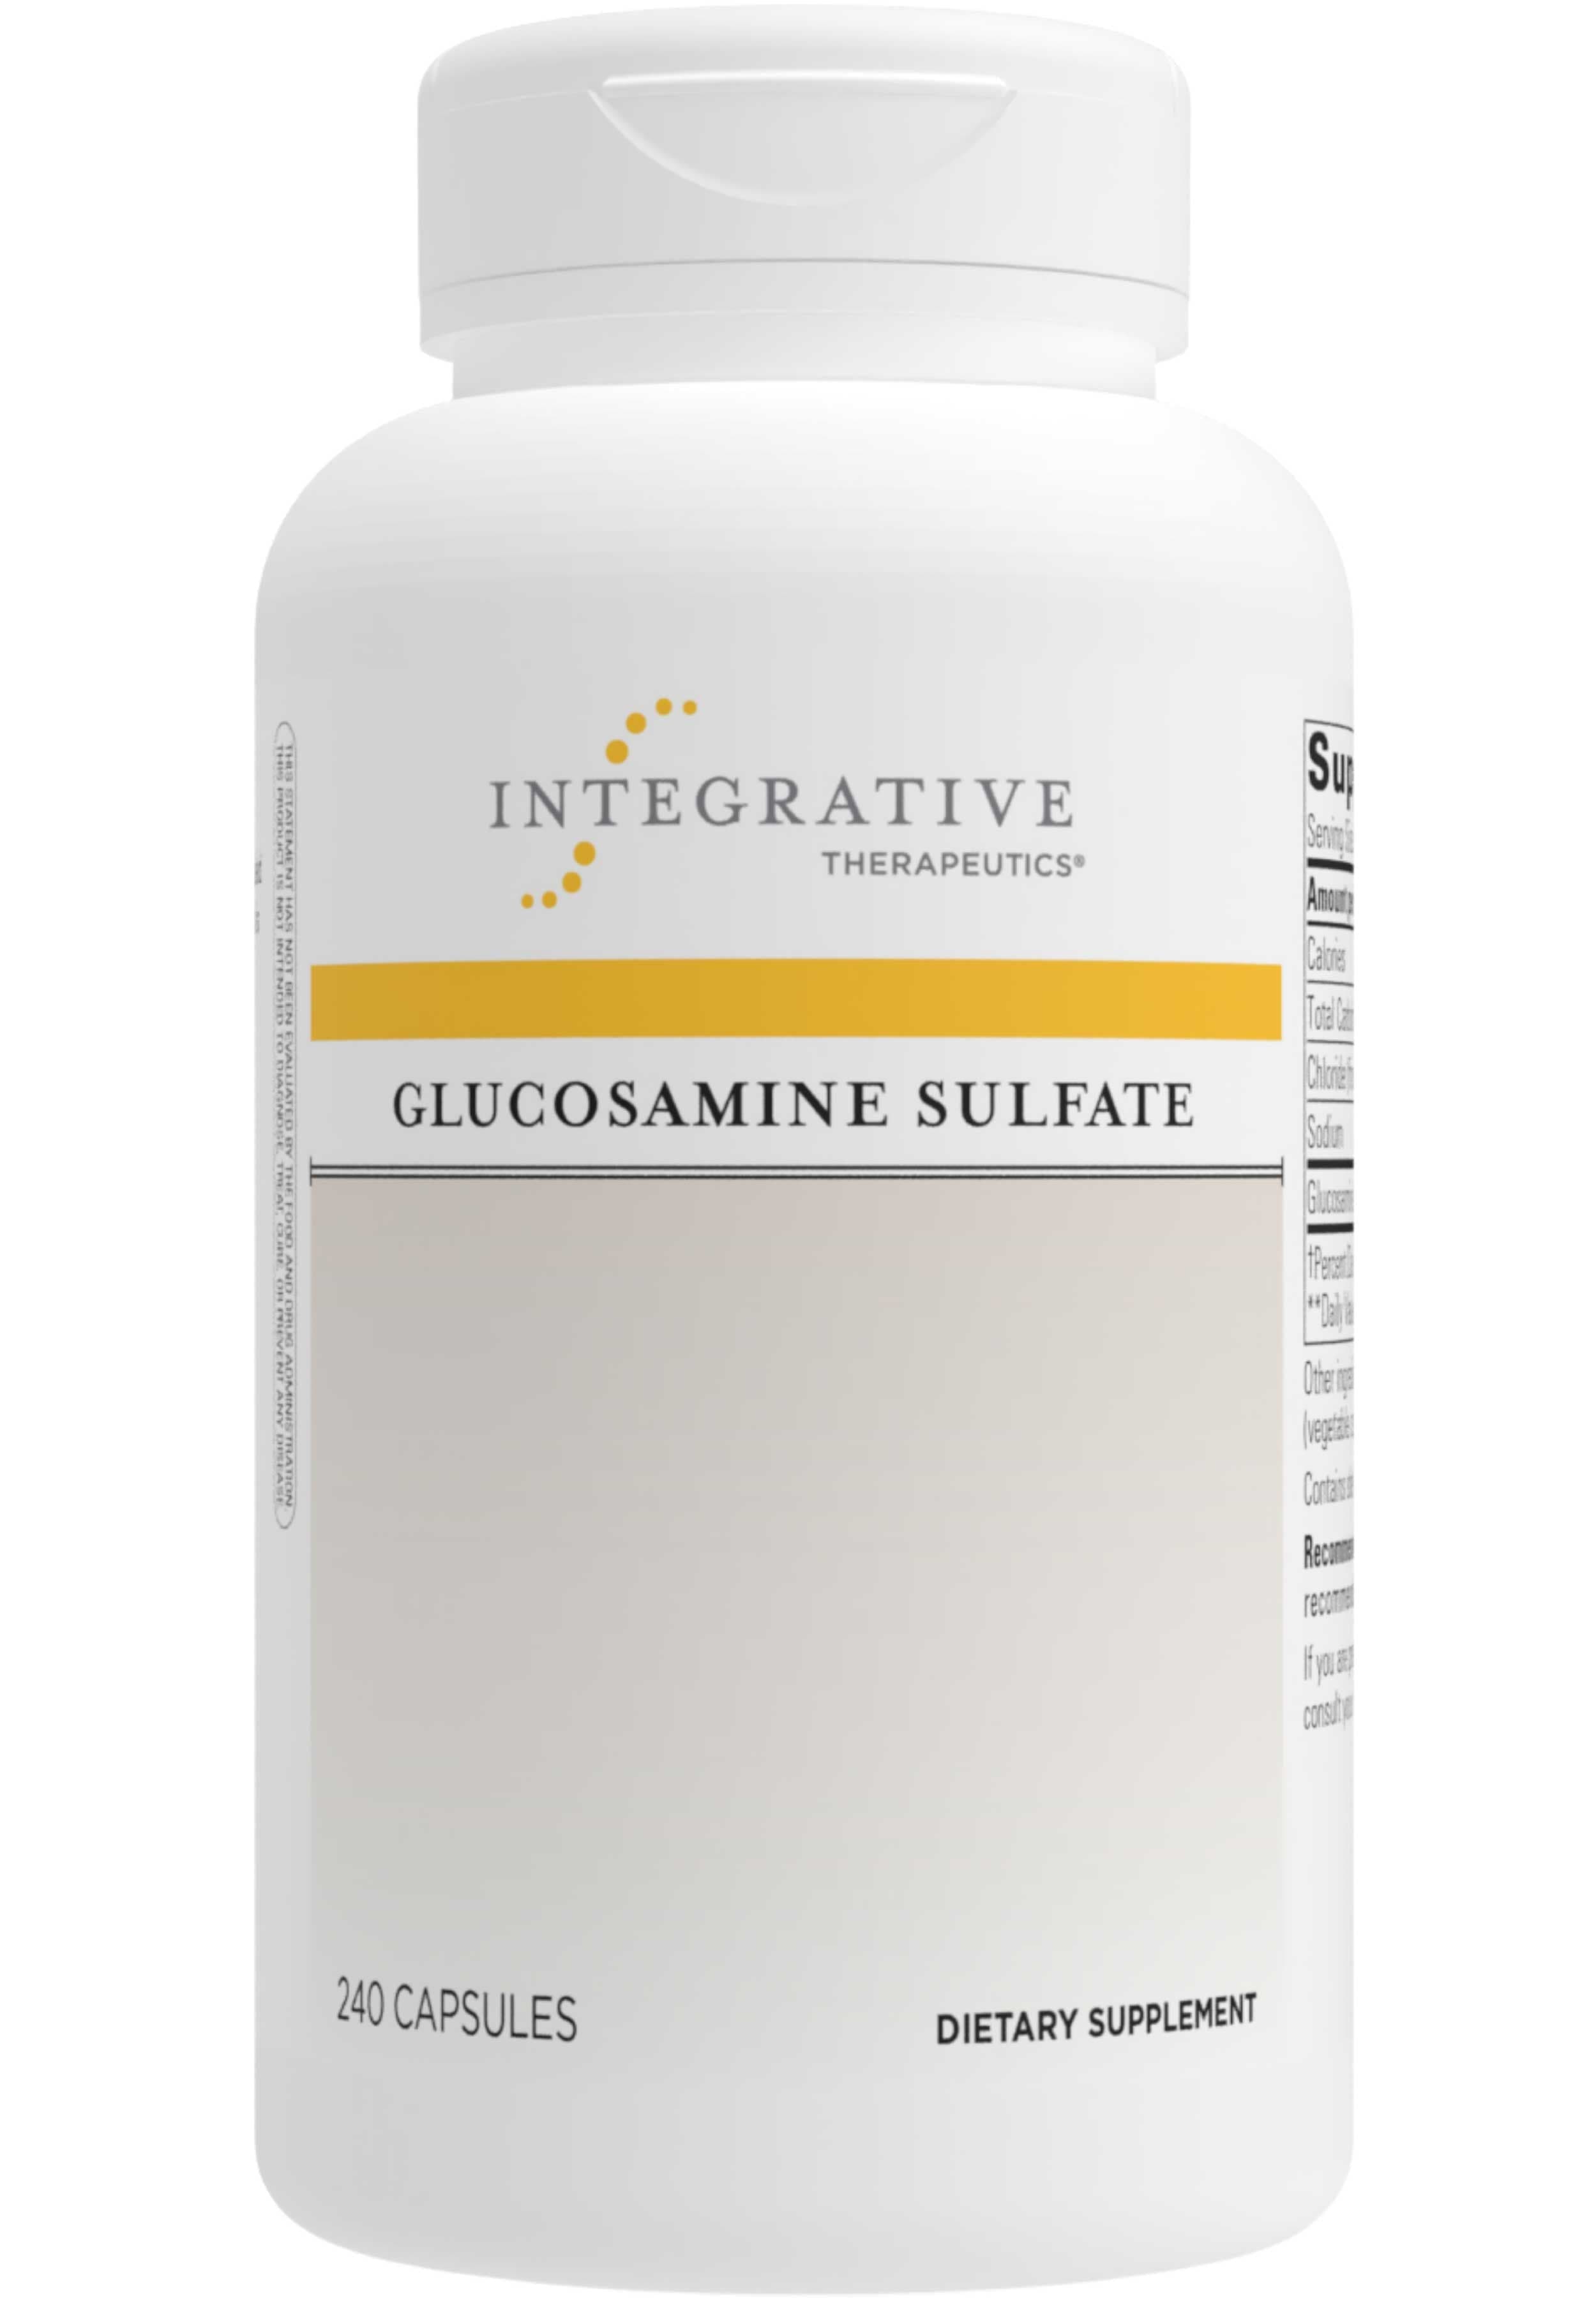 Integrative Therapeutics Glucosamine Sulfate